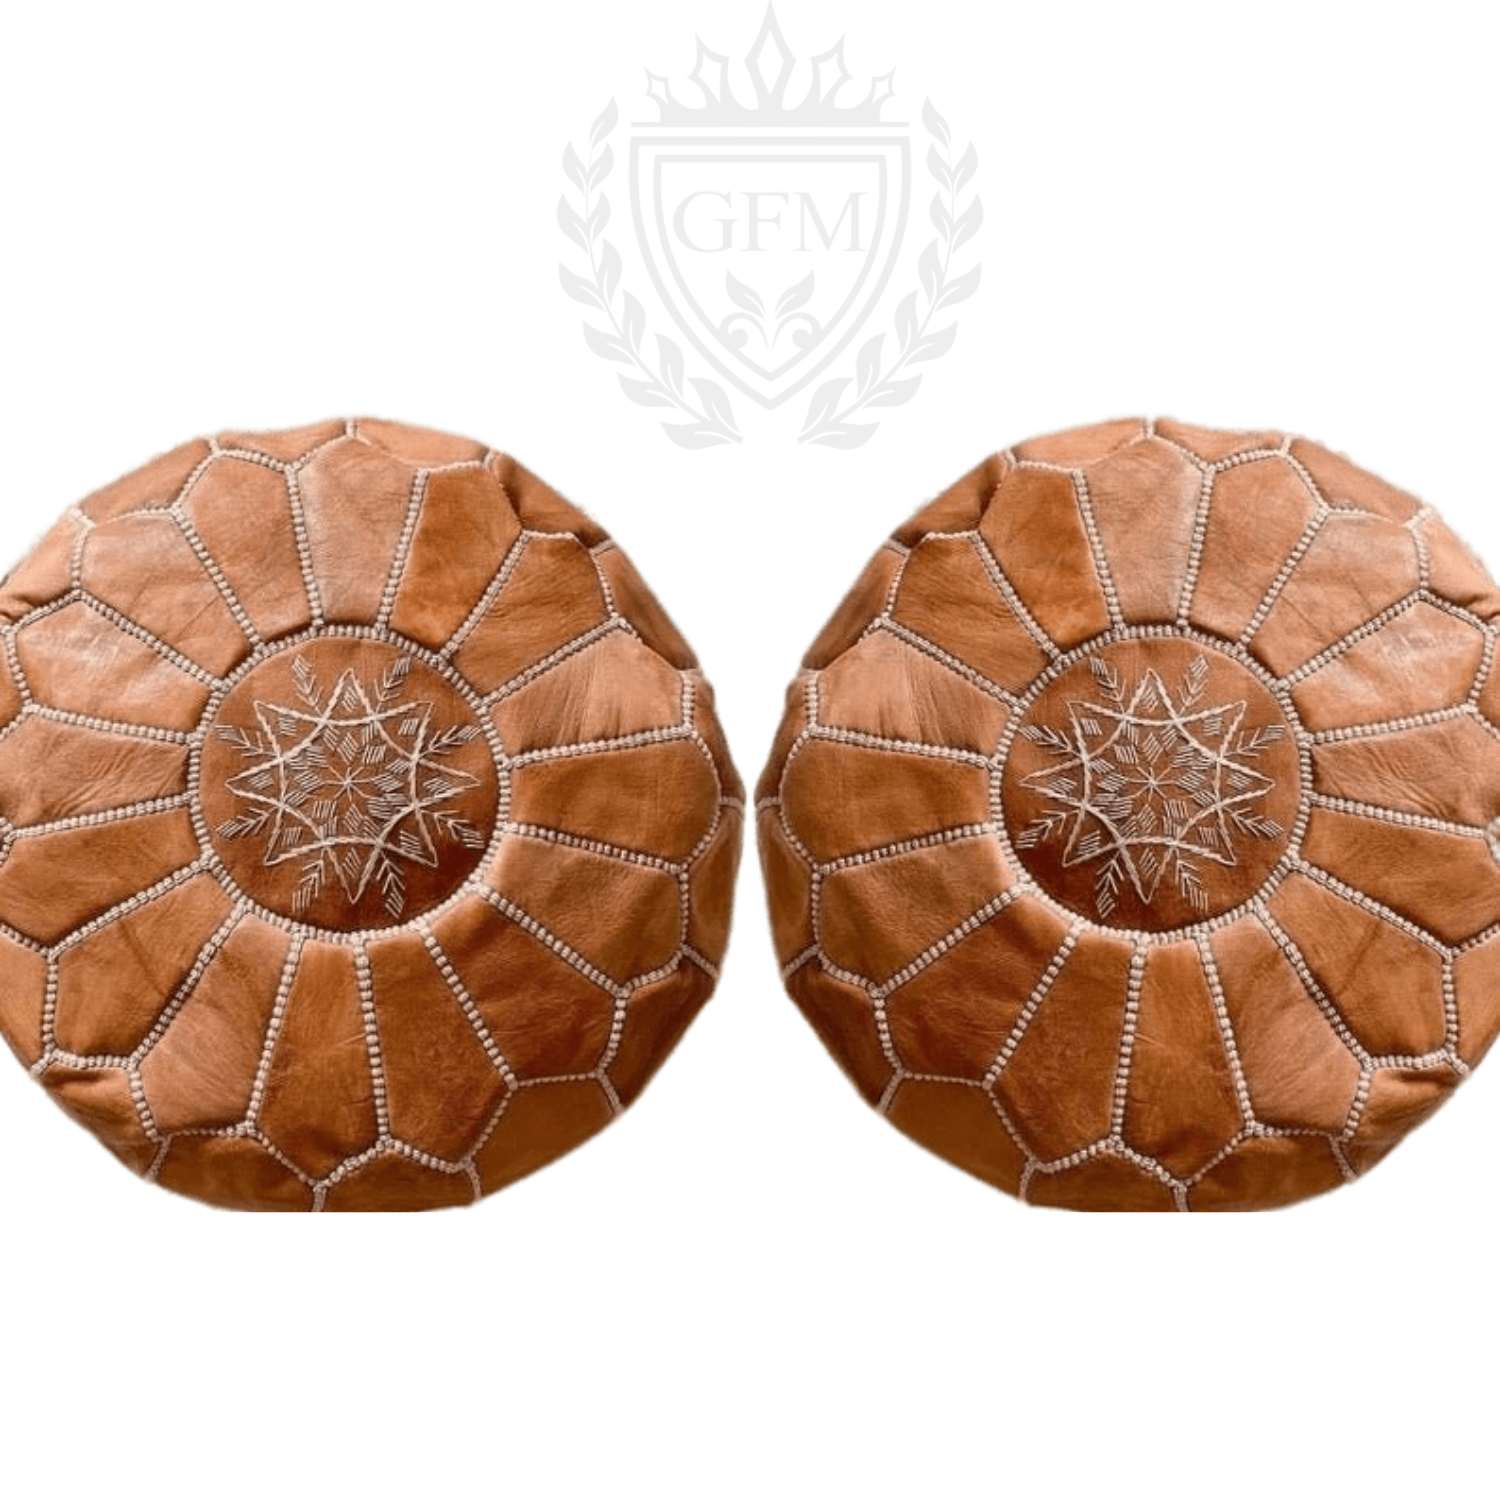 2 Moroccan leather pouf, Moroccan Ottoman pouf, moroccan pouffe light brown